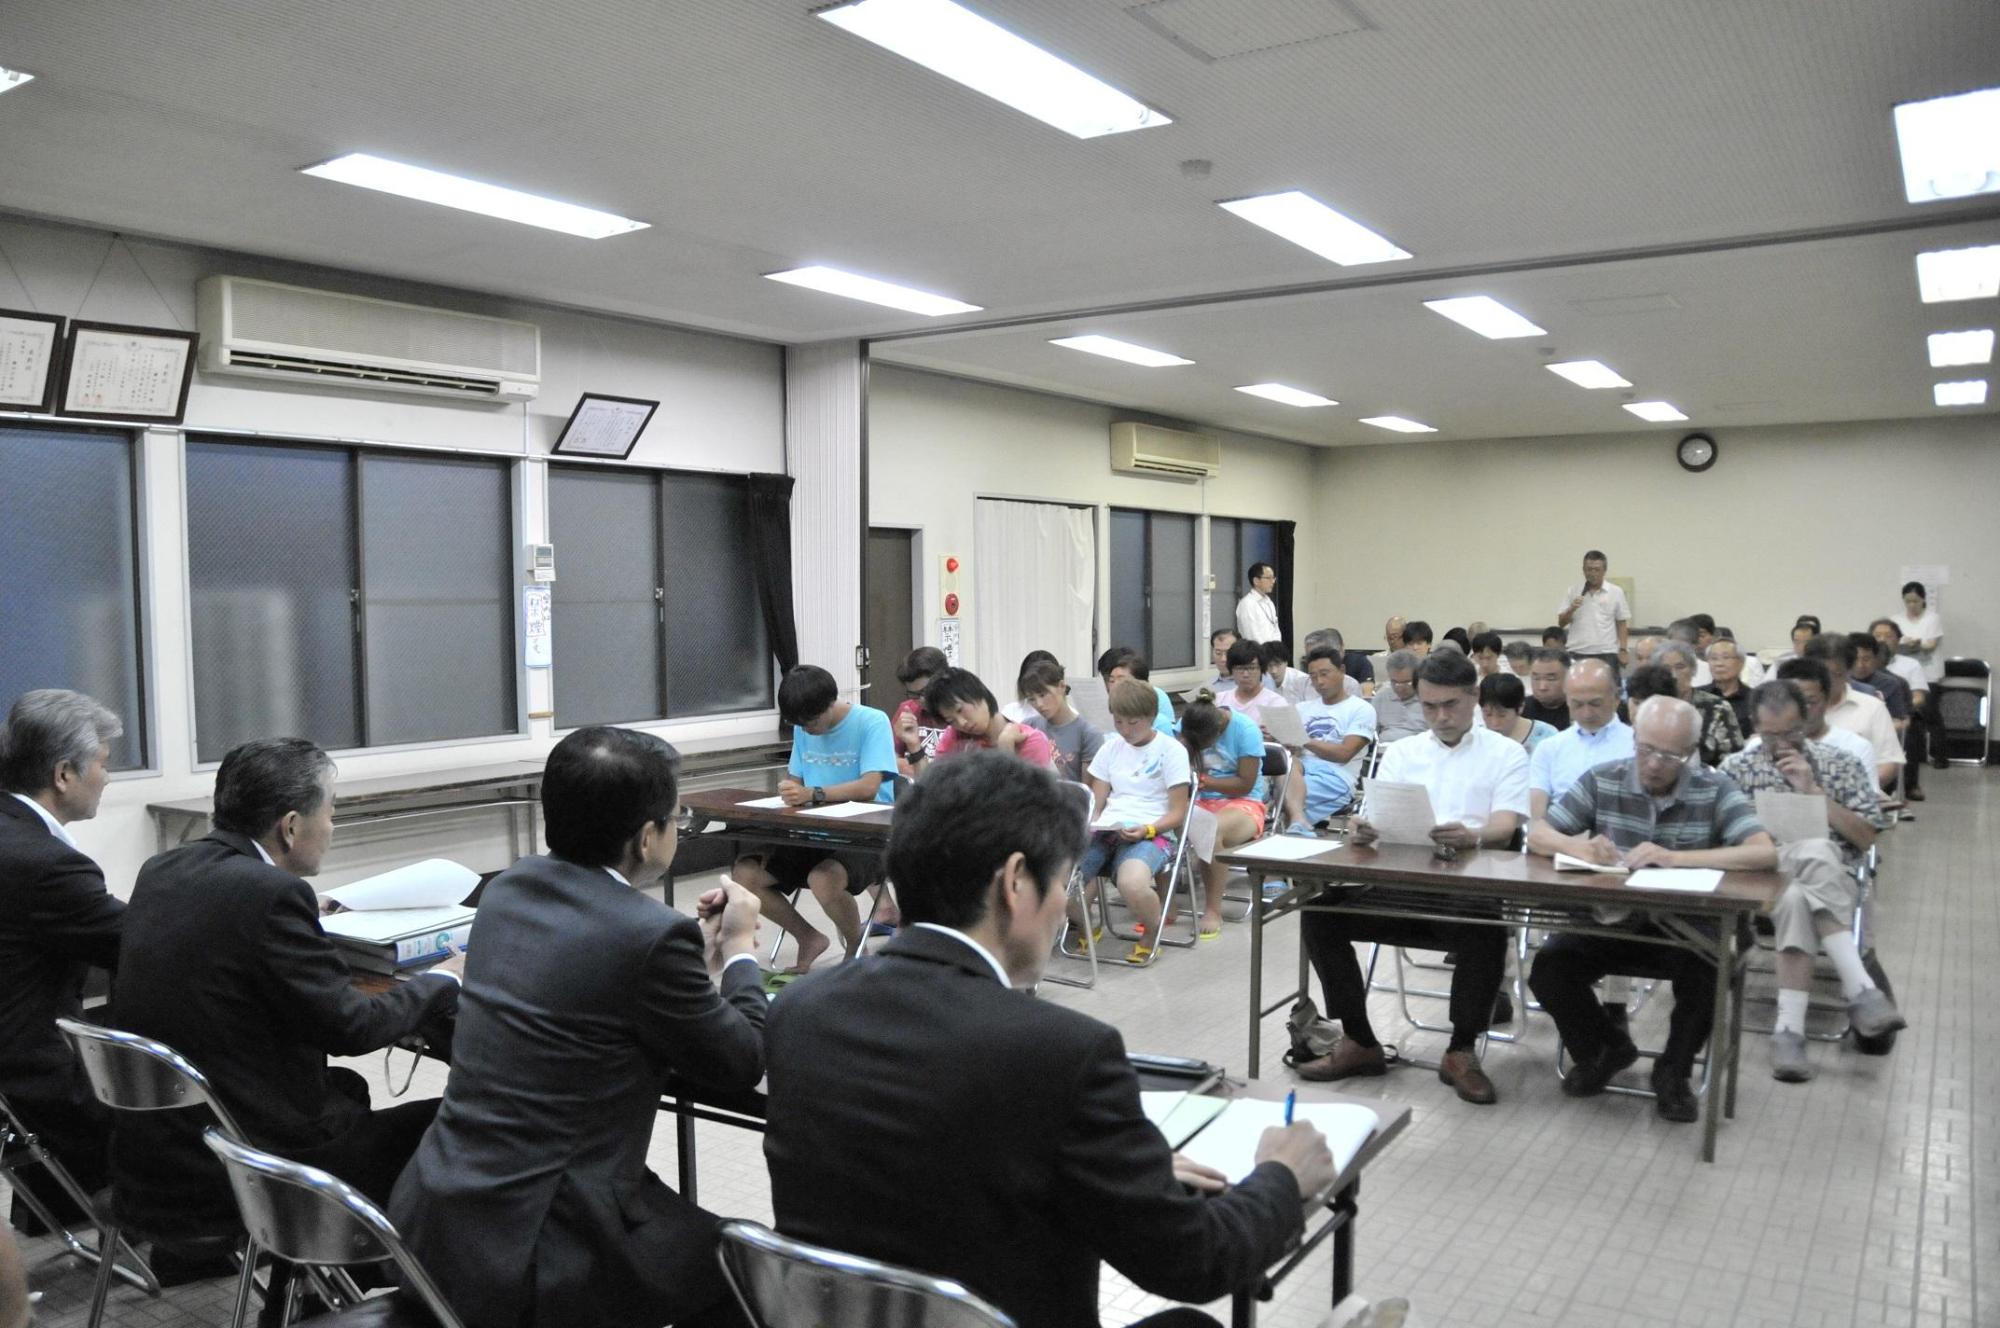 鎌田会館の席に着く地域タウンミーティング参加者らの写真